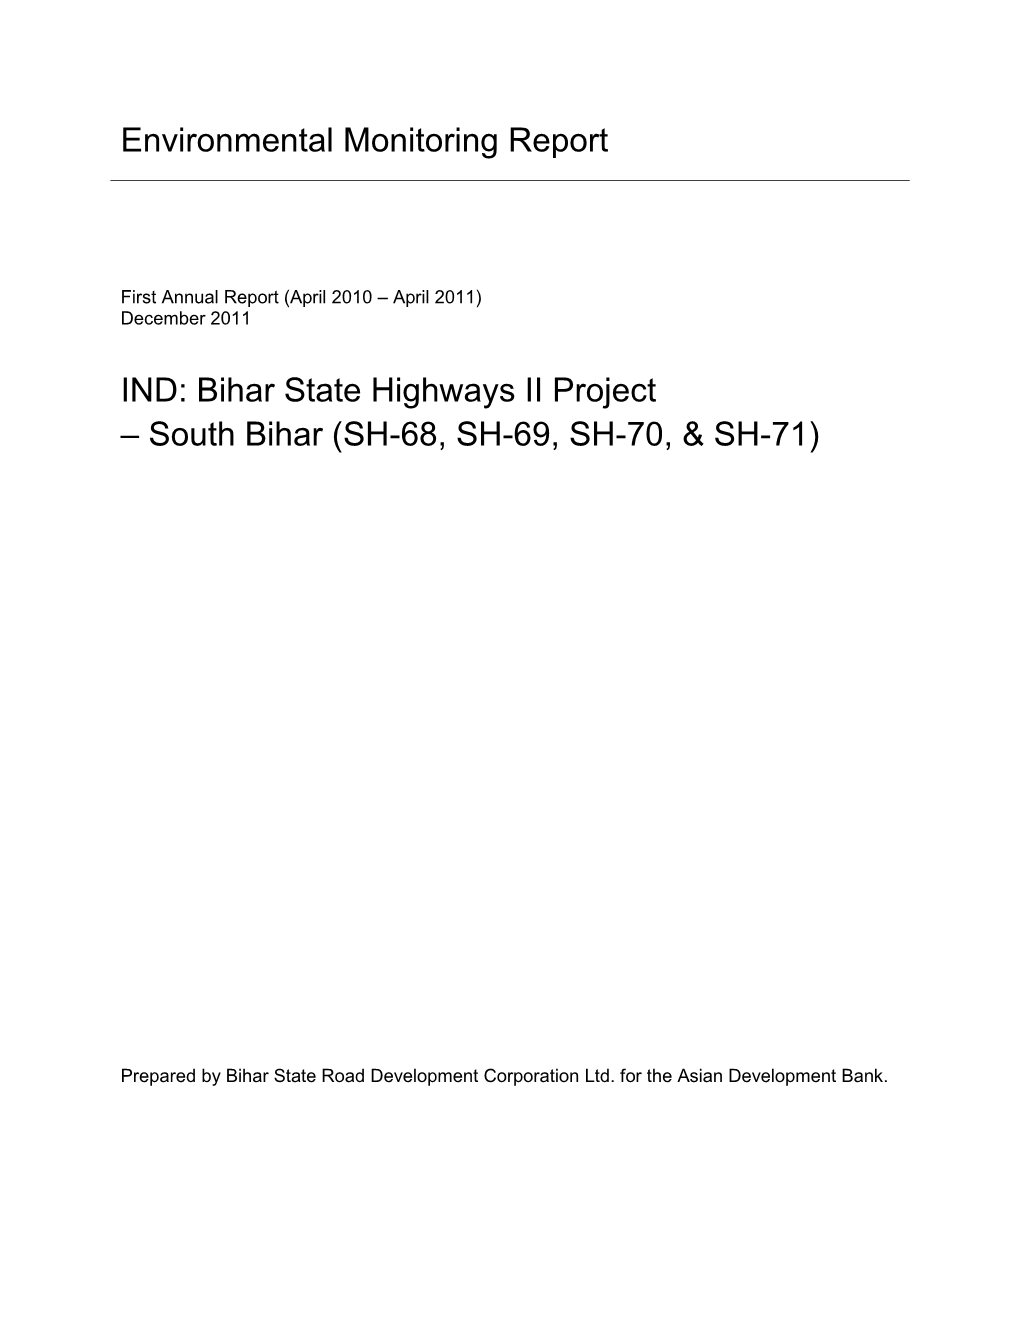 EMR: India: Bihar State Highways II Project